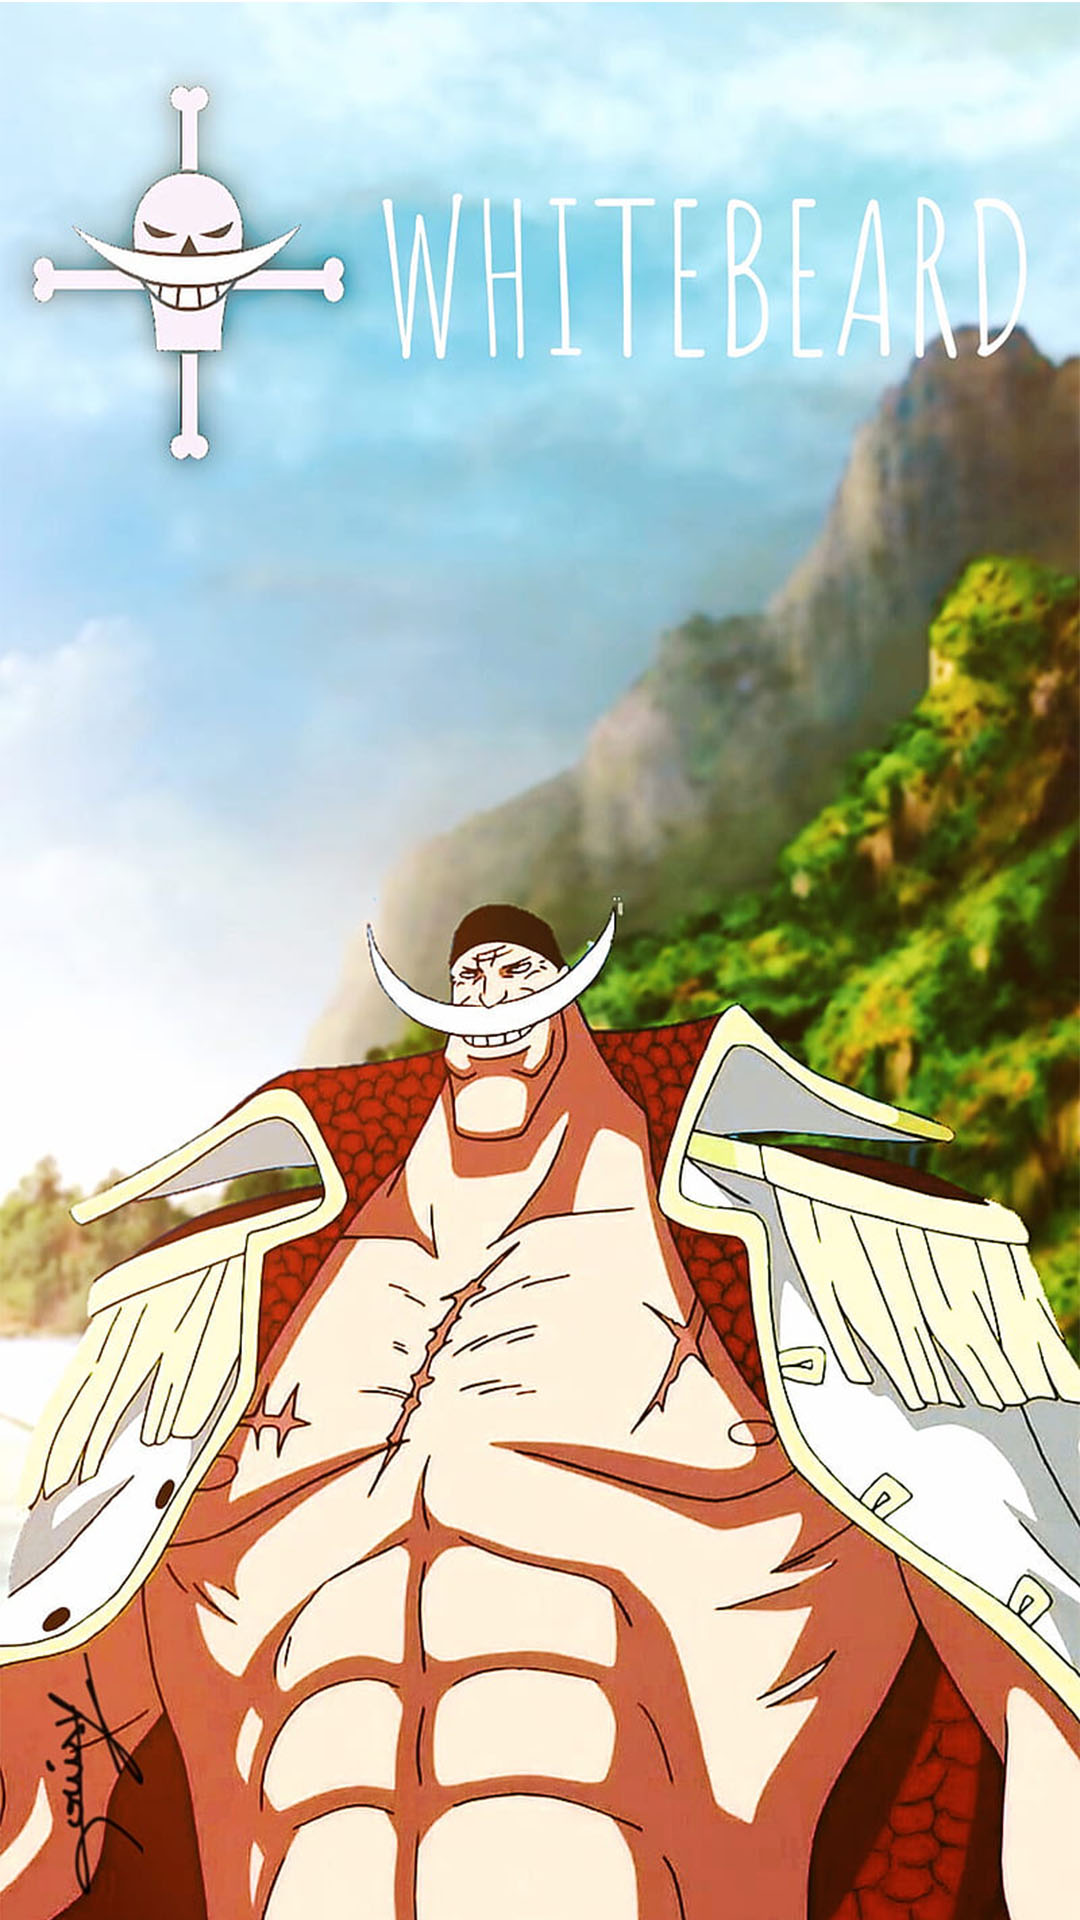 Râu Trắng  Câu chuyện về người đàn ông mạnh nhất One Piece